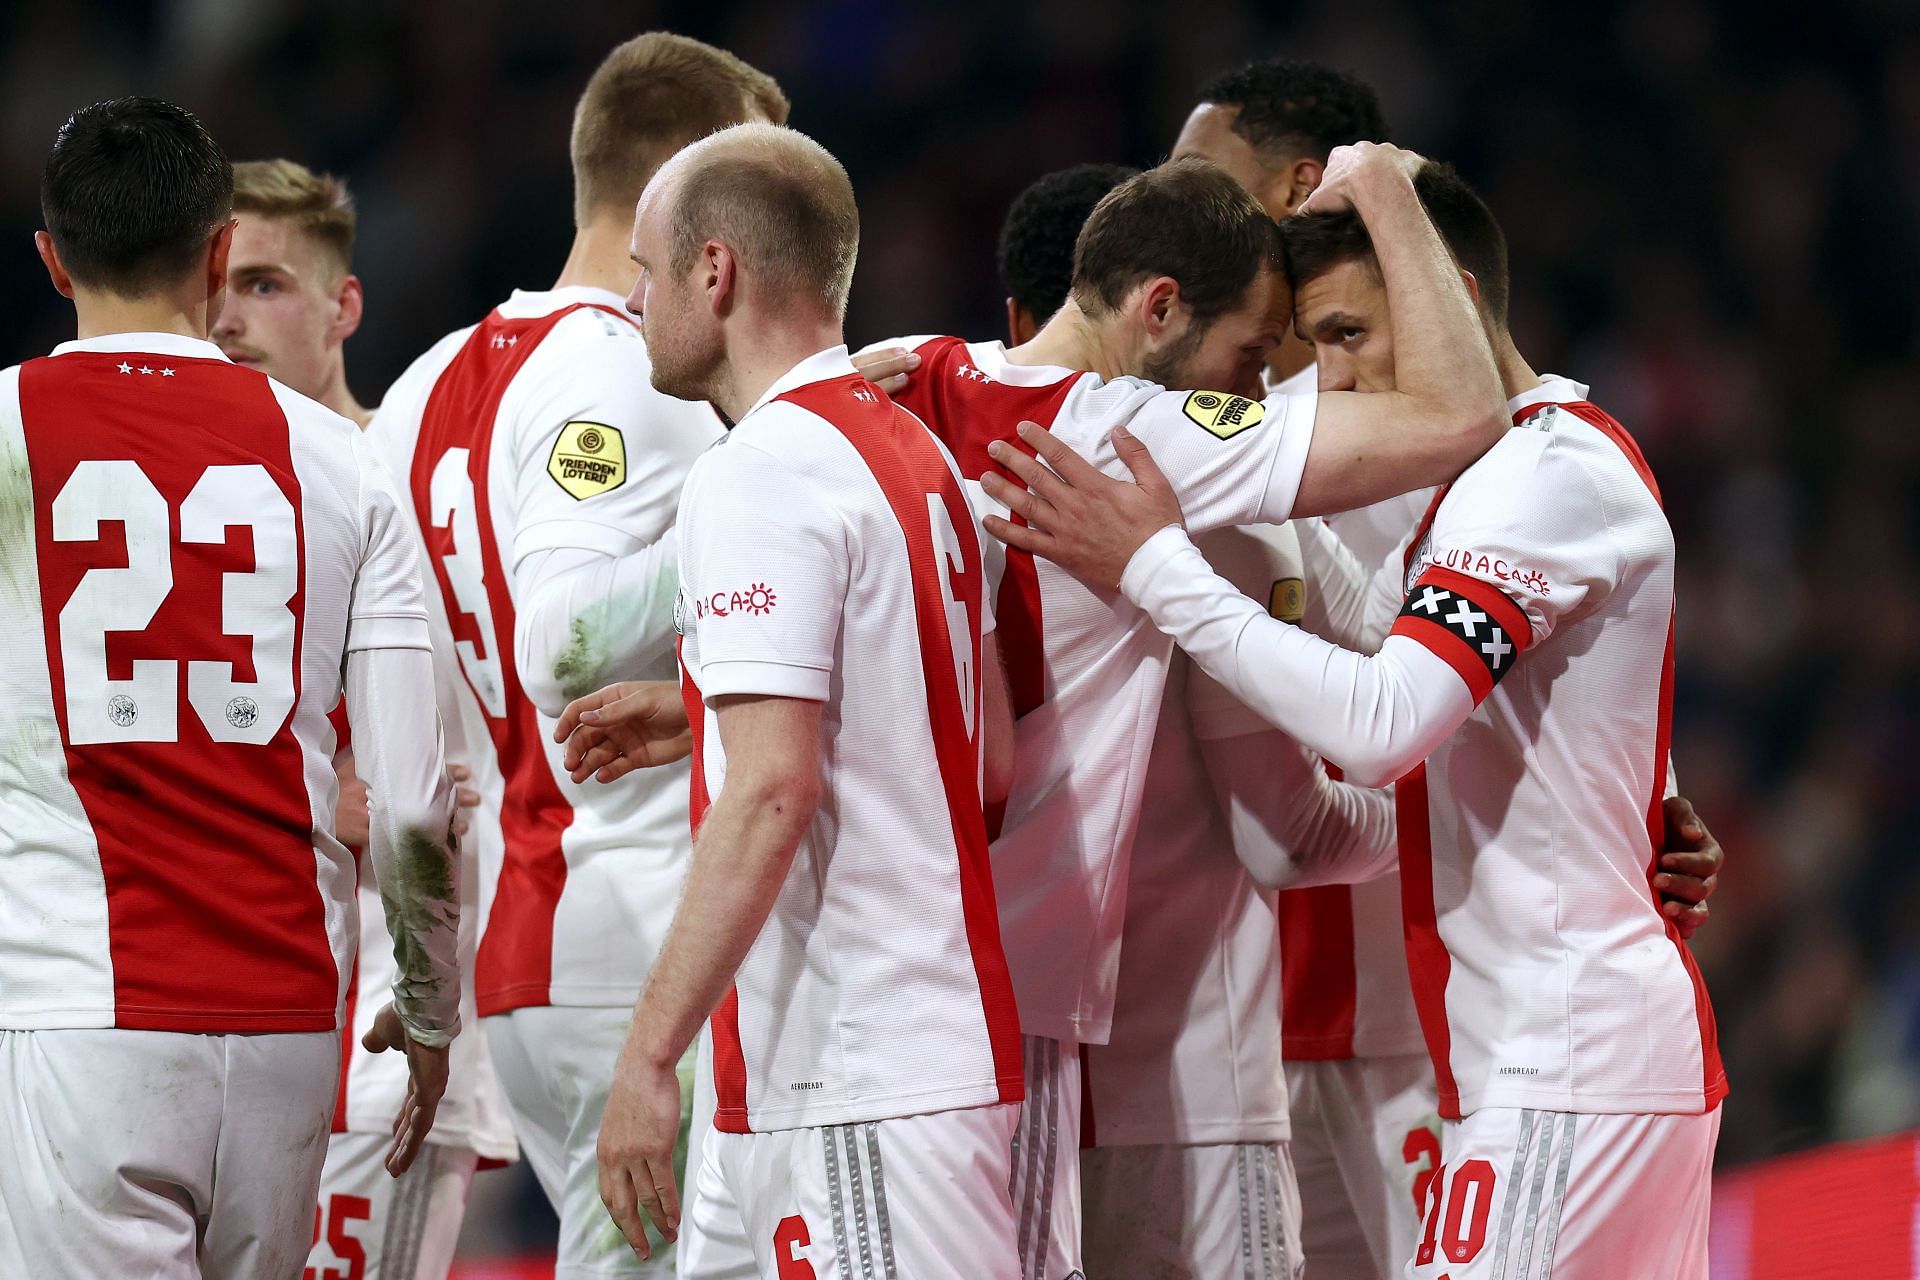 Ajax will face NEC on Saturday